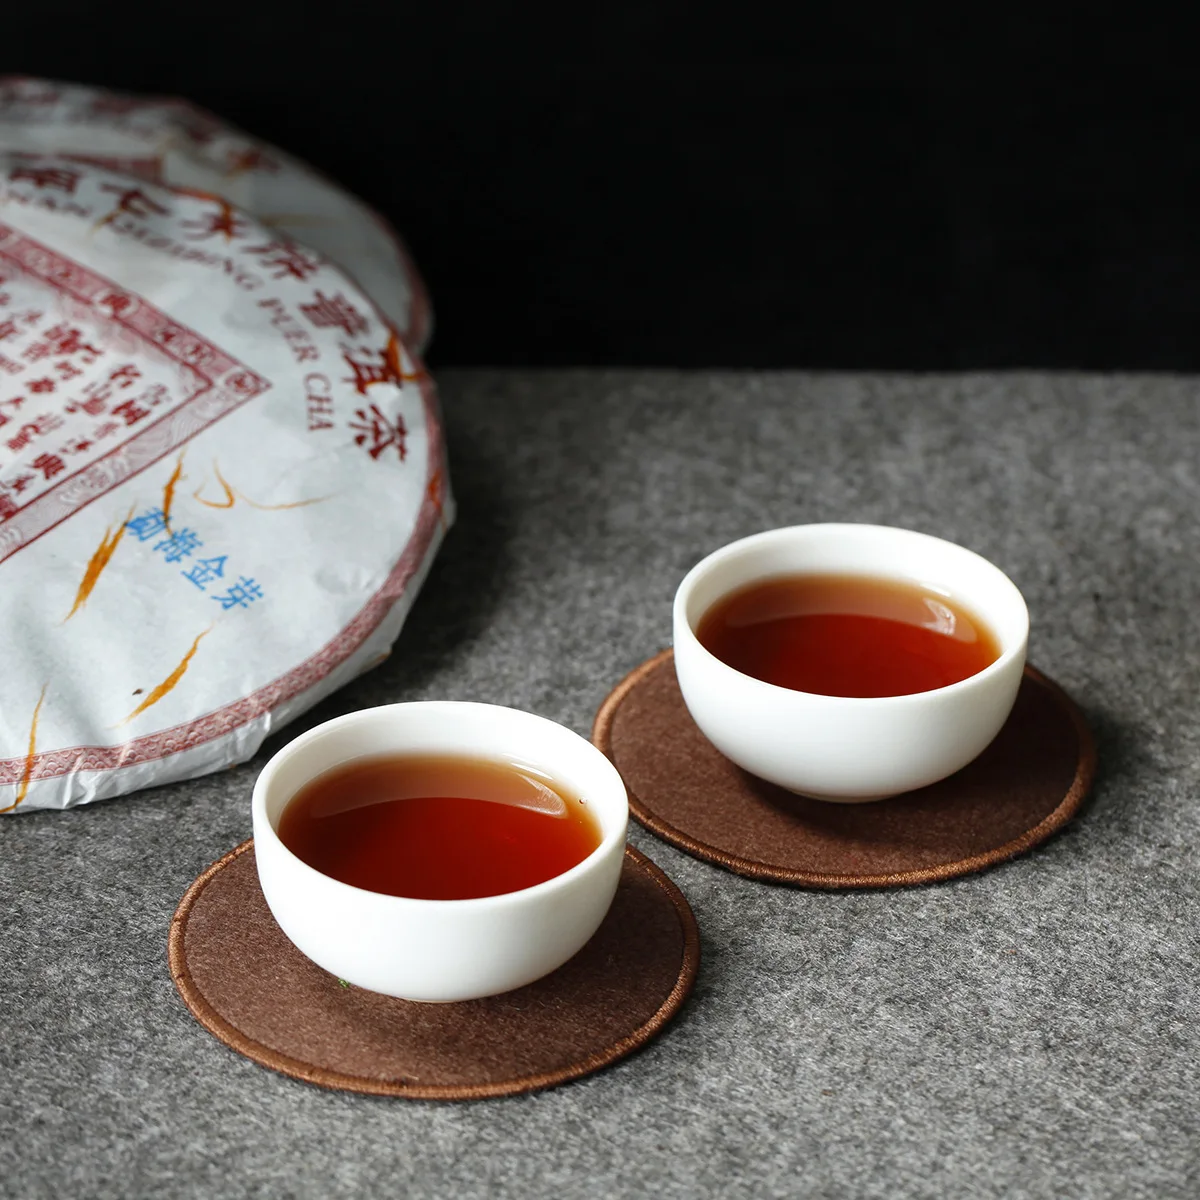 Юньнань Пуэр чай весенний чай менхай золотой бутон чай император Дашу приготовленный чай 357 г семизерный торт